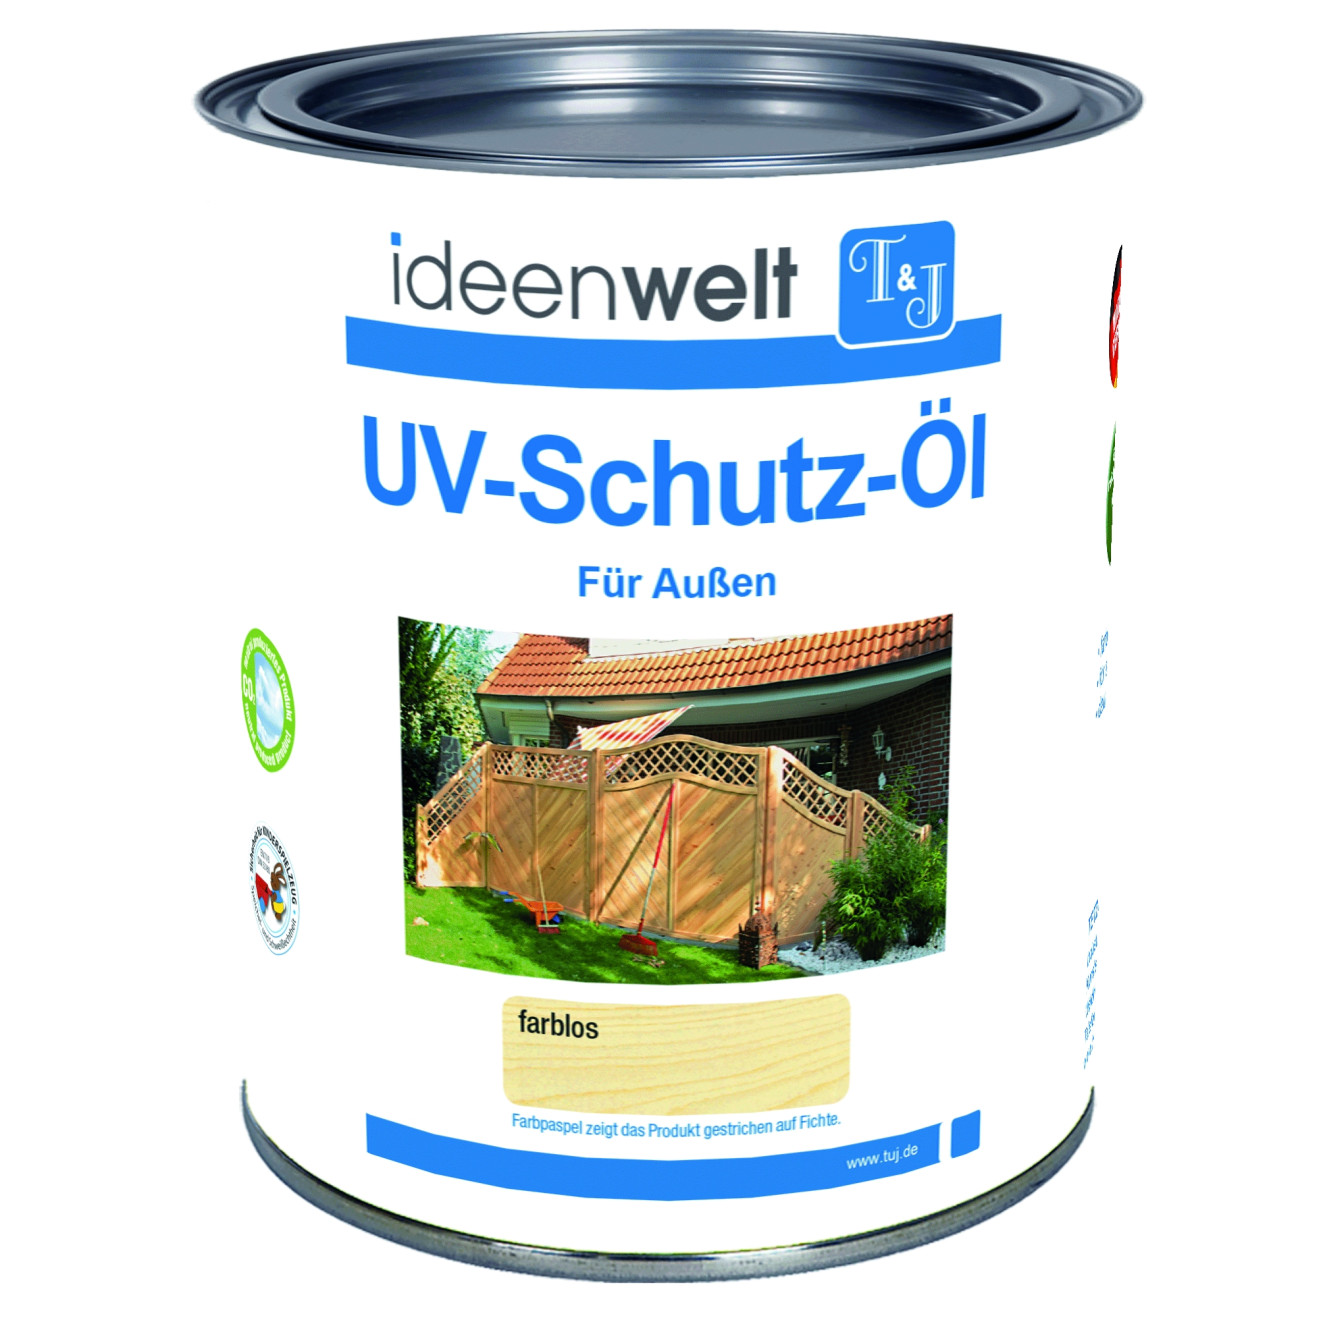 UV-Schutz-Öl, farblos 0,75 Ltr. für Außen f. ca. 16 m² Fläche/Anstrich